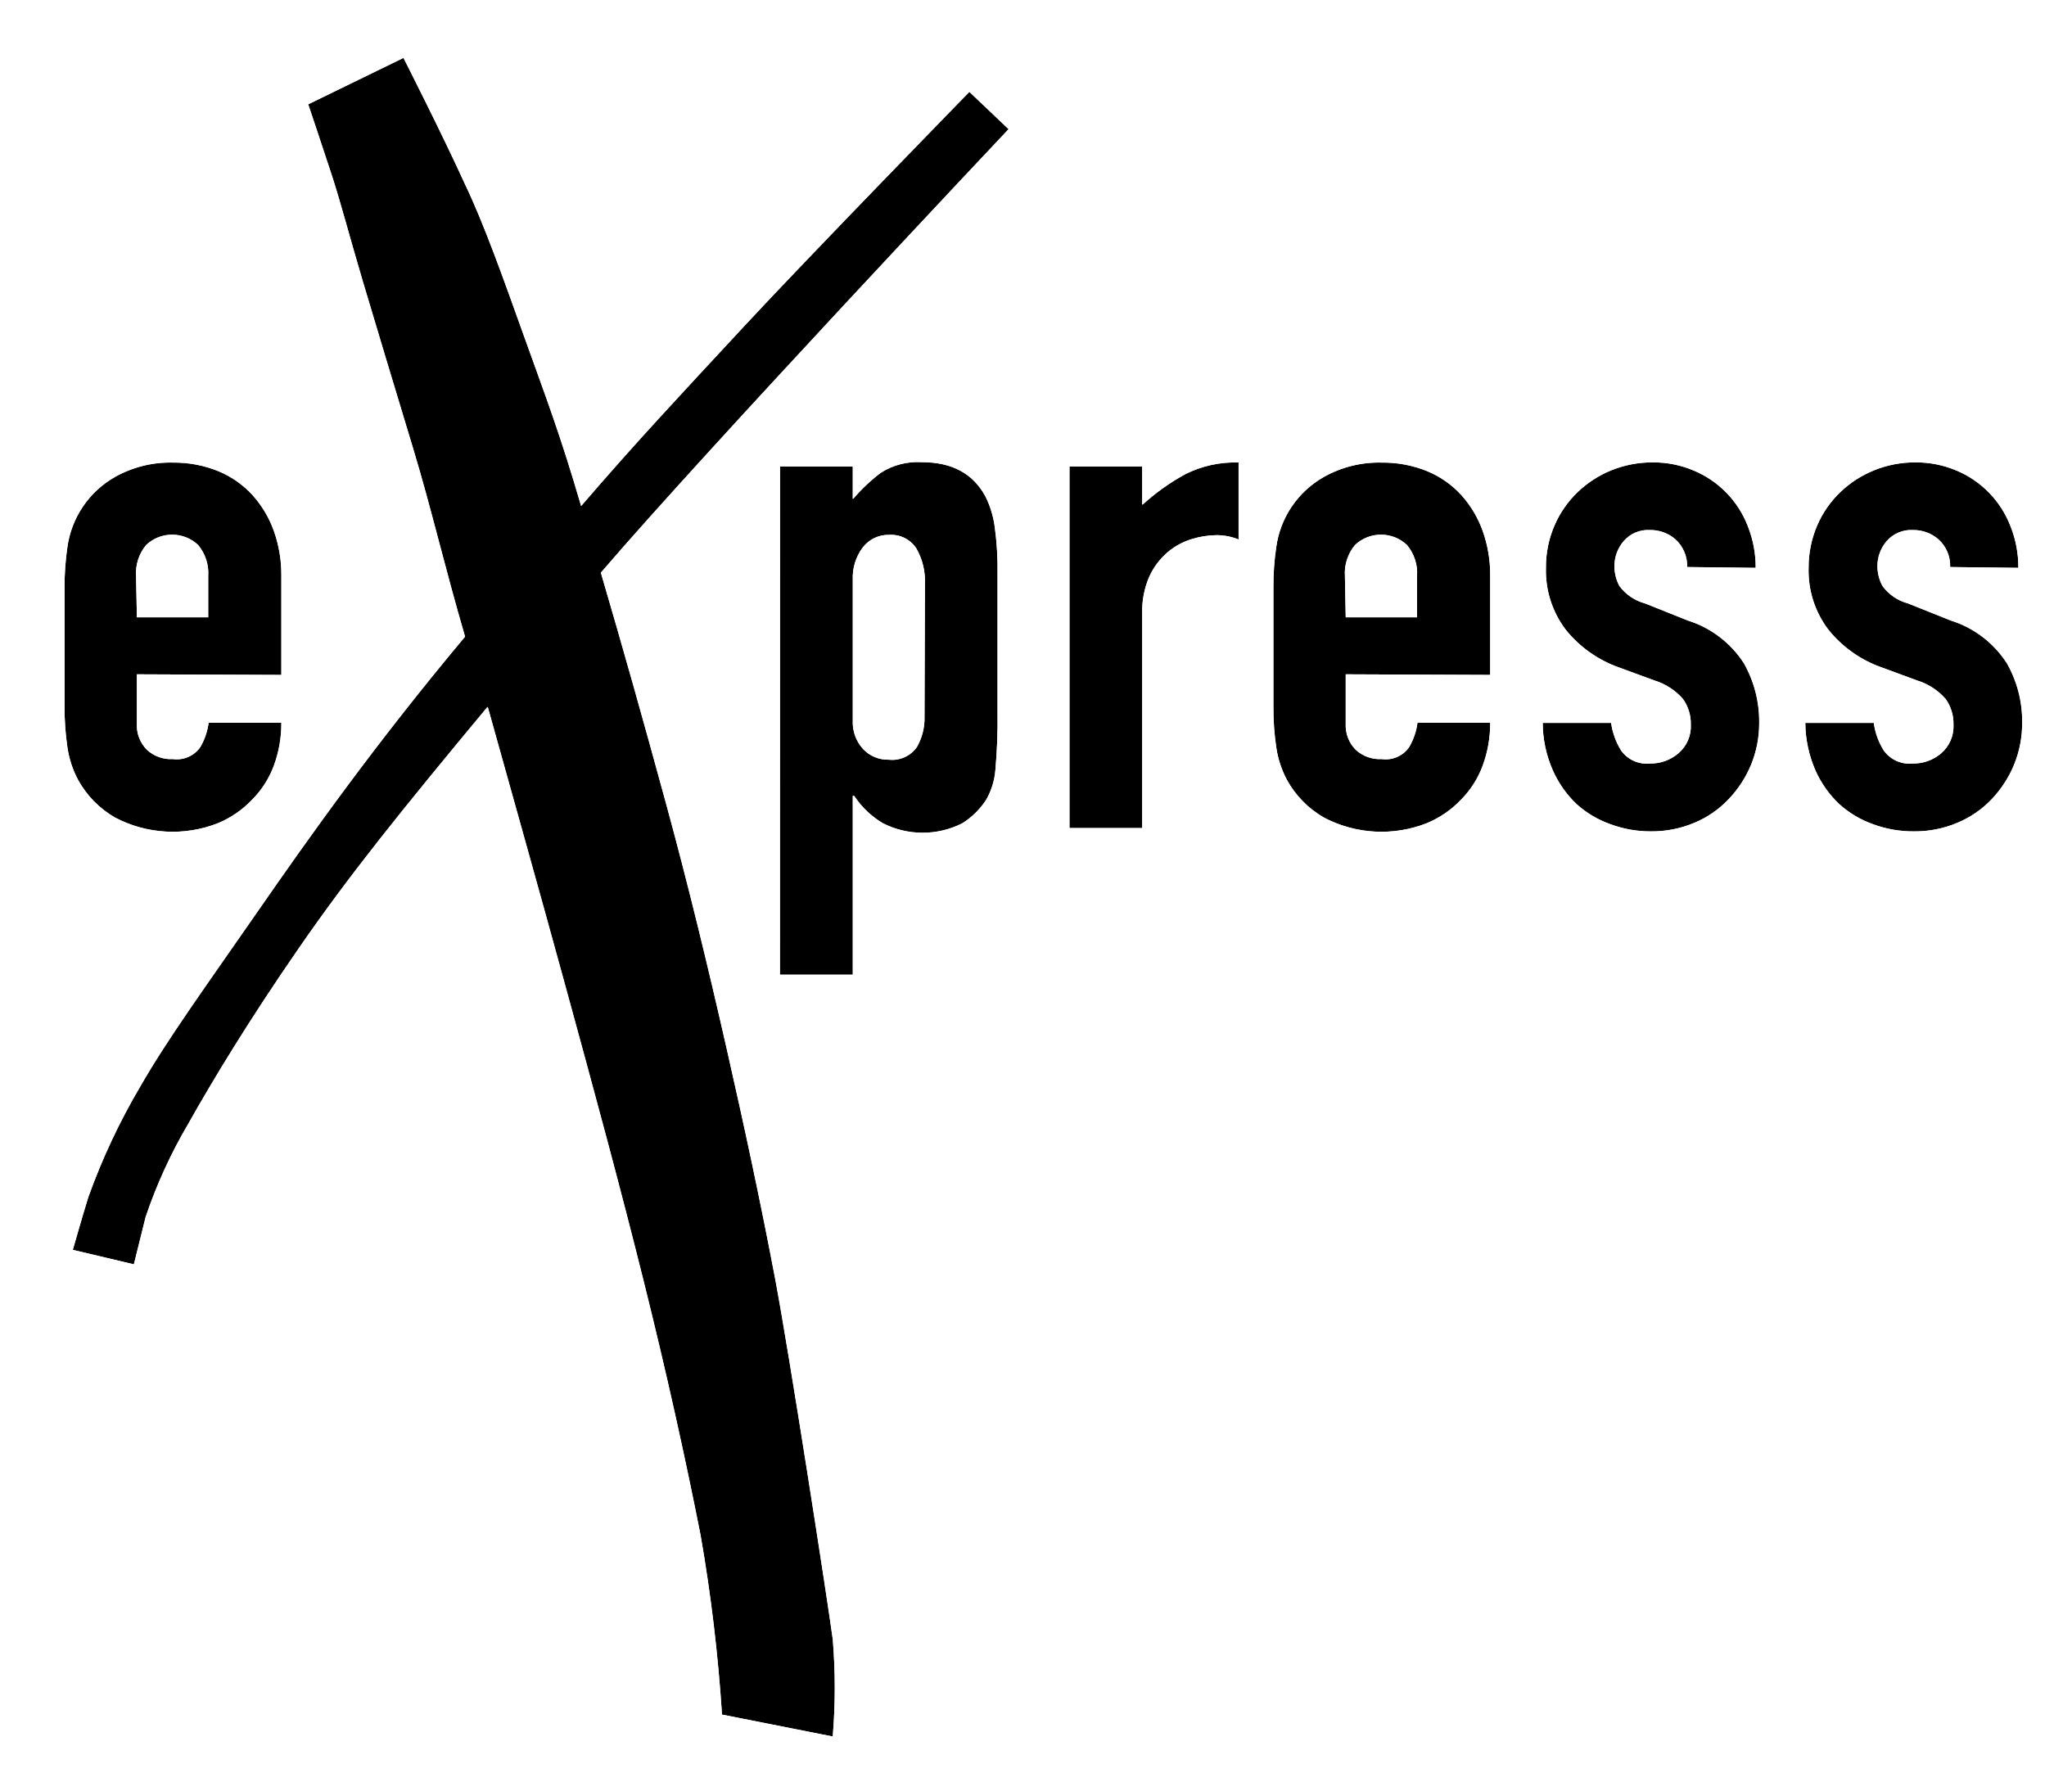 eXpress